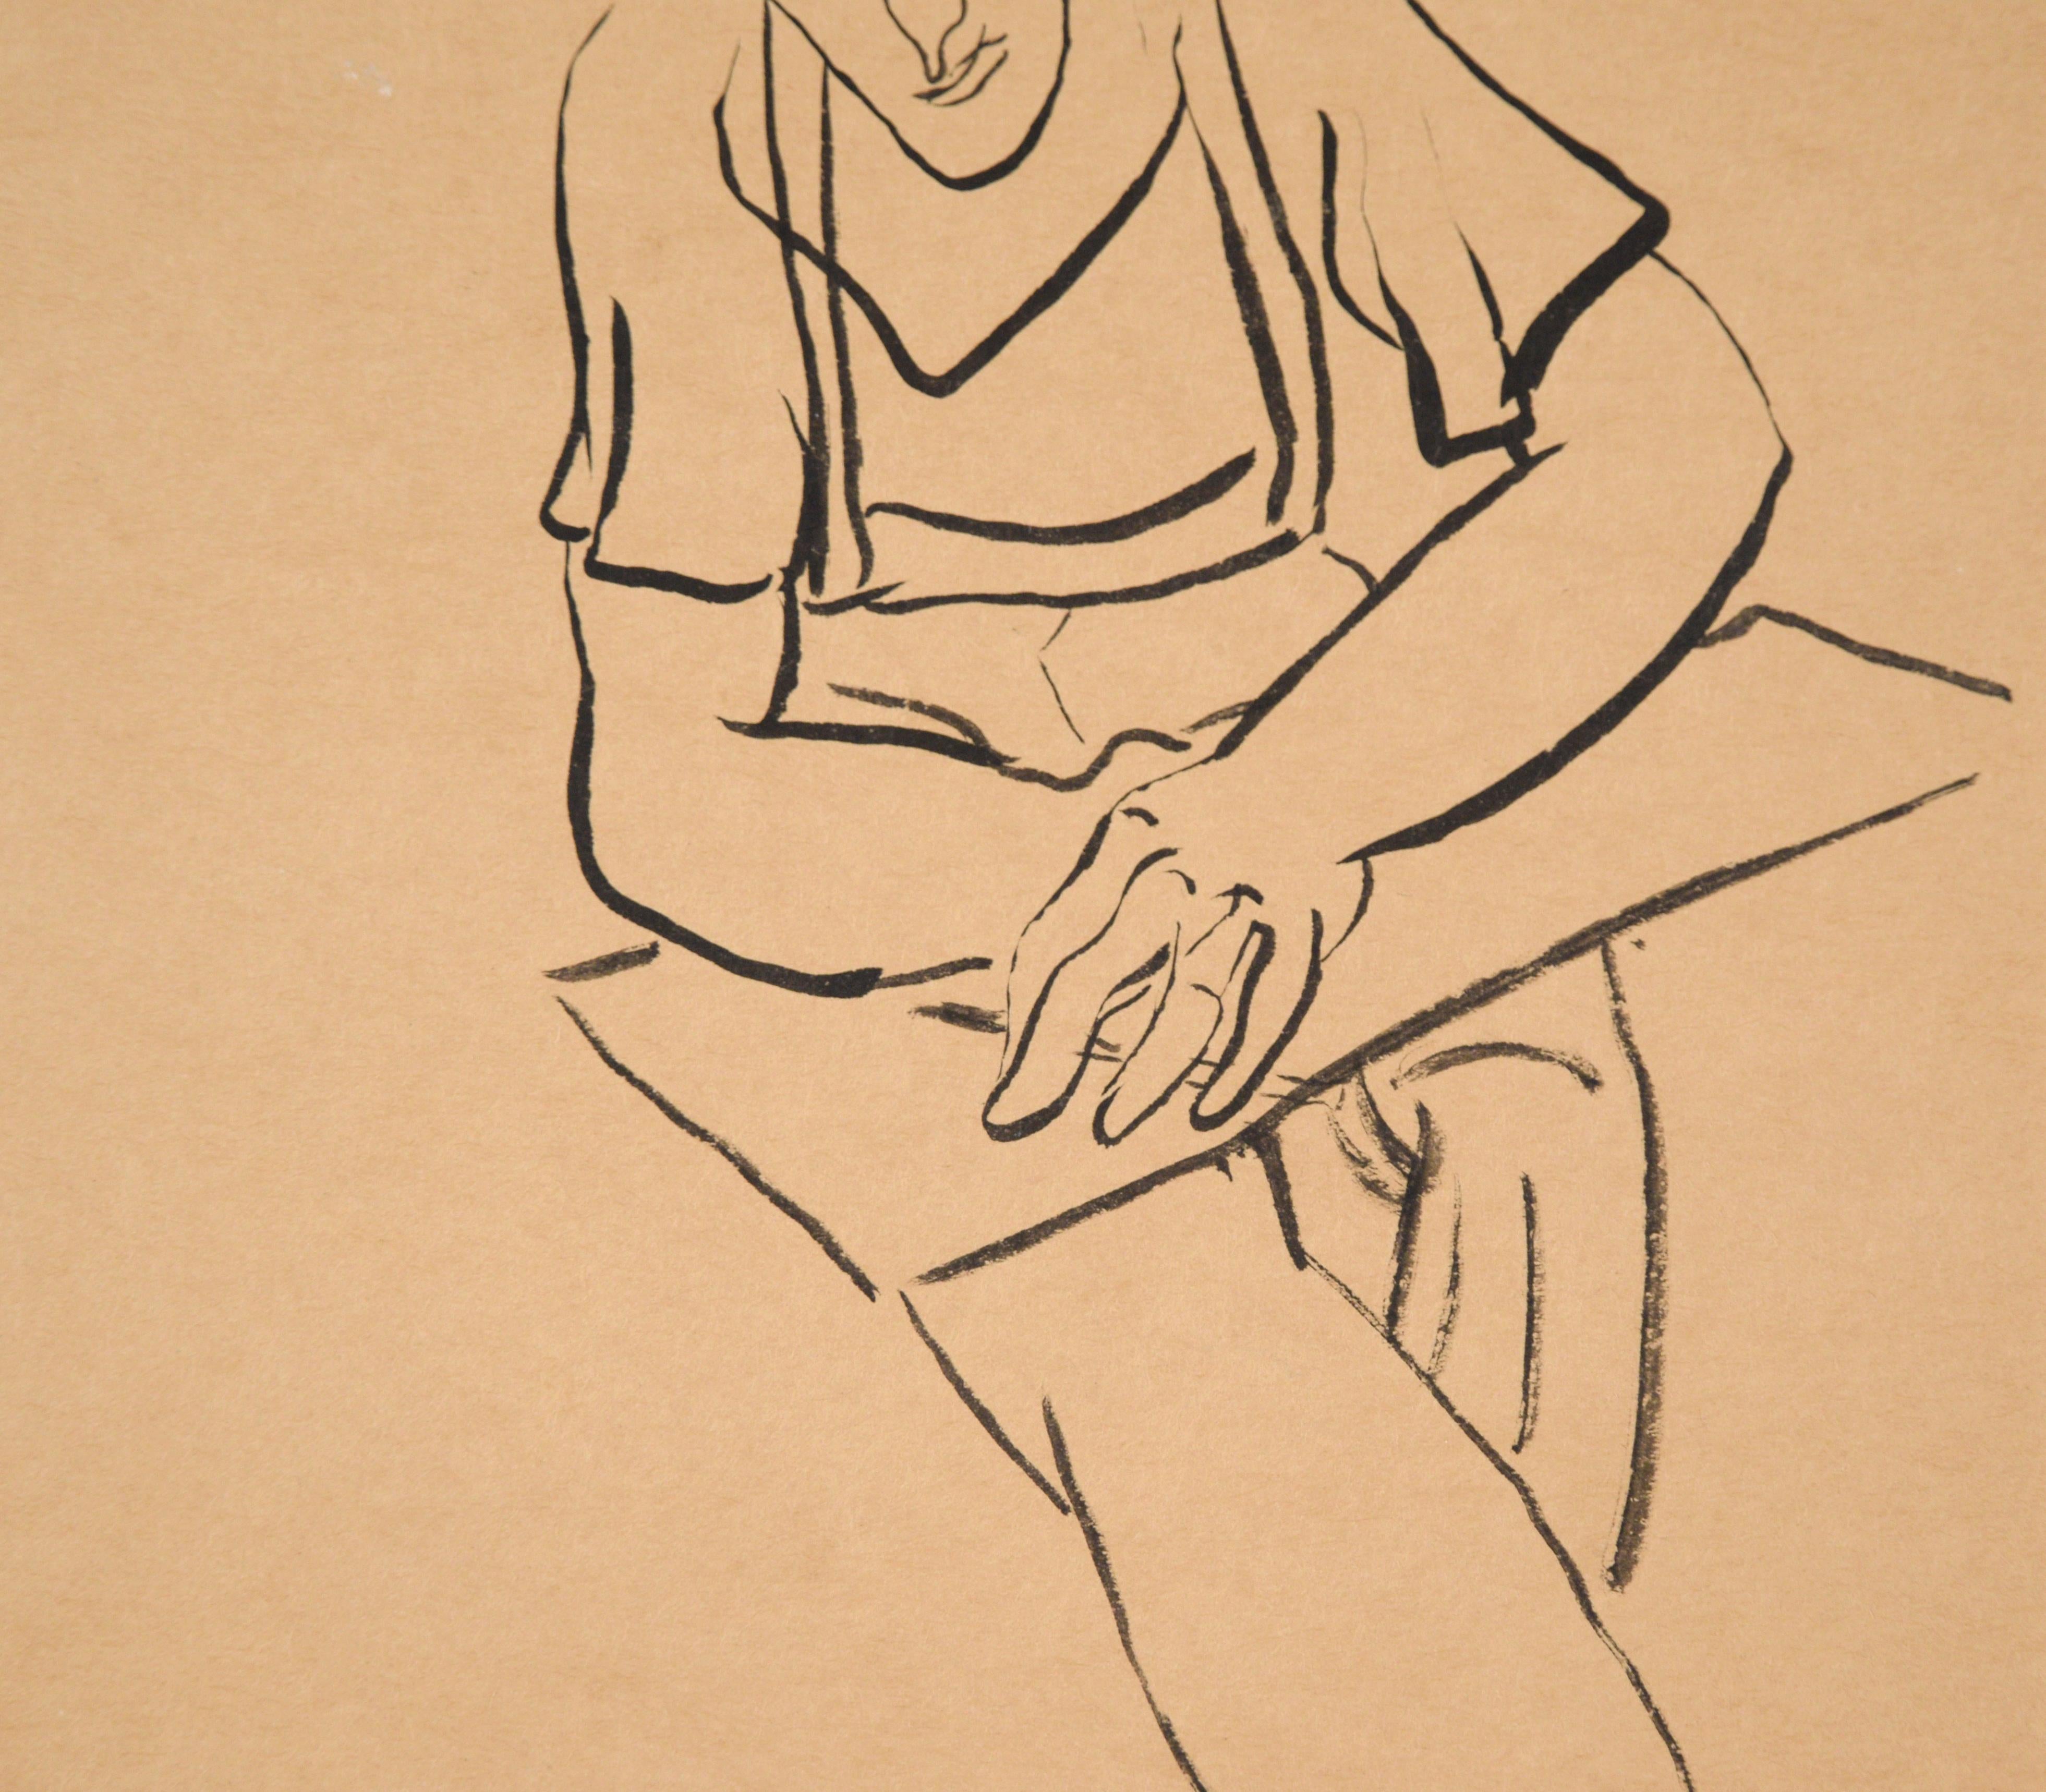 Porträtzeichnung eines Mannes an einem Schreibtisch in Indien, Tinte auf hellbraunem Papier

Figurative Zeichnung eines Mannes an einem Schreibtisch von Jerry O'Day (Amerikaner, 1912). Der Mann sitzt da und nimmt einen Stift in die Hand. Seine